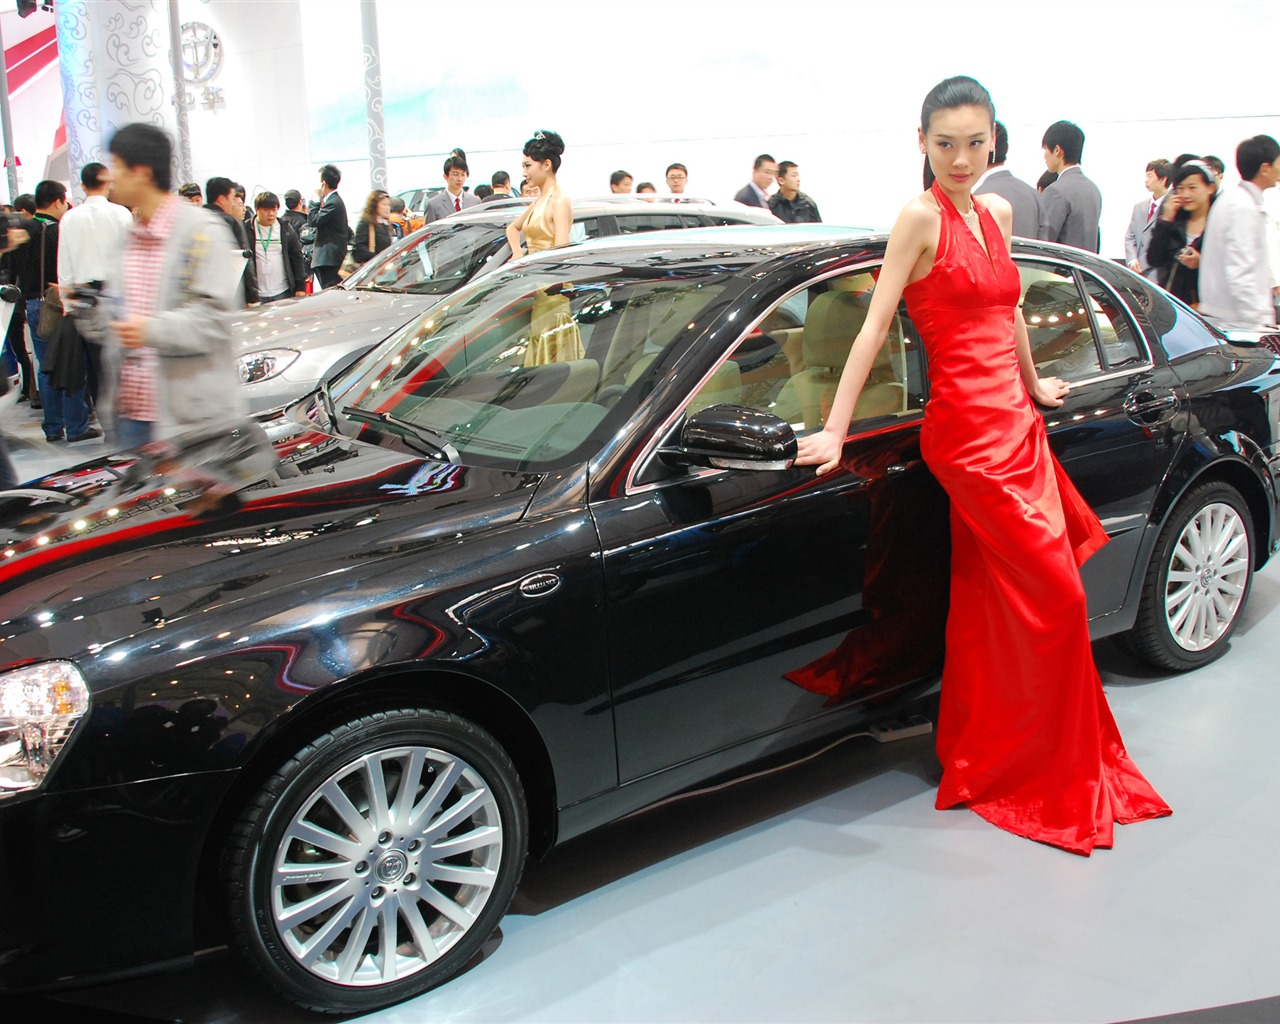 2010北京国际车展(一) (z321x123作品)17 - 1280x1024